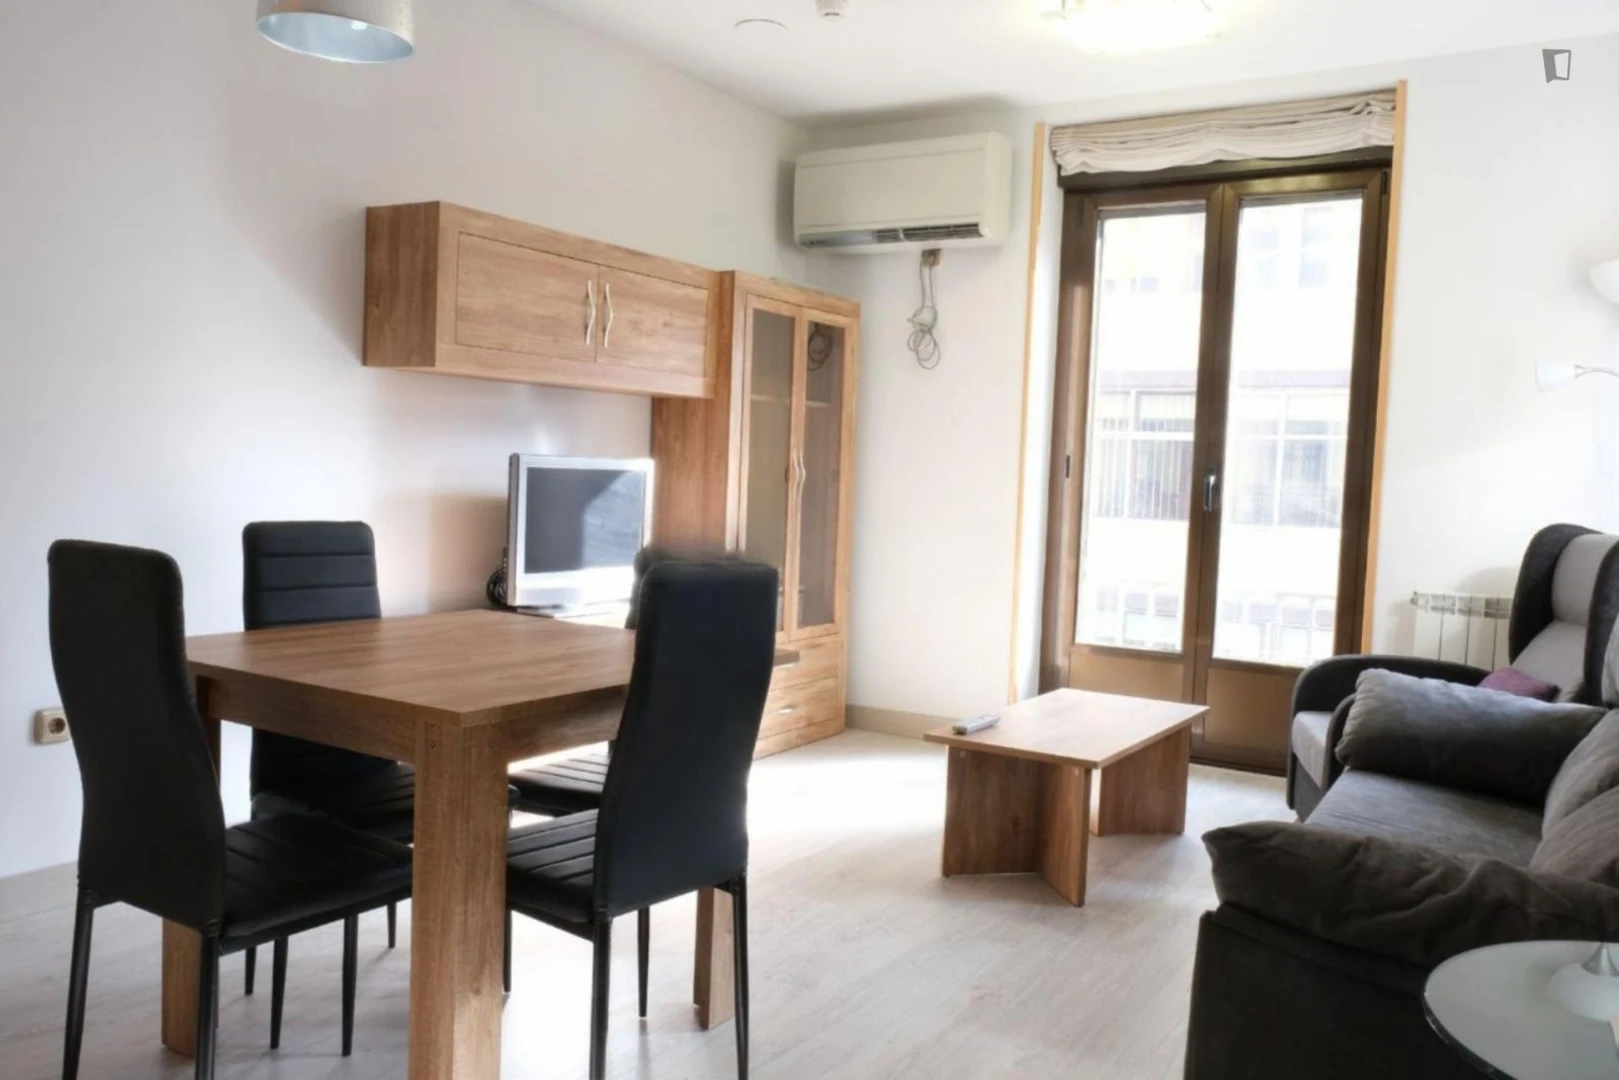 Apartamento moderno e brilhante em salamanca